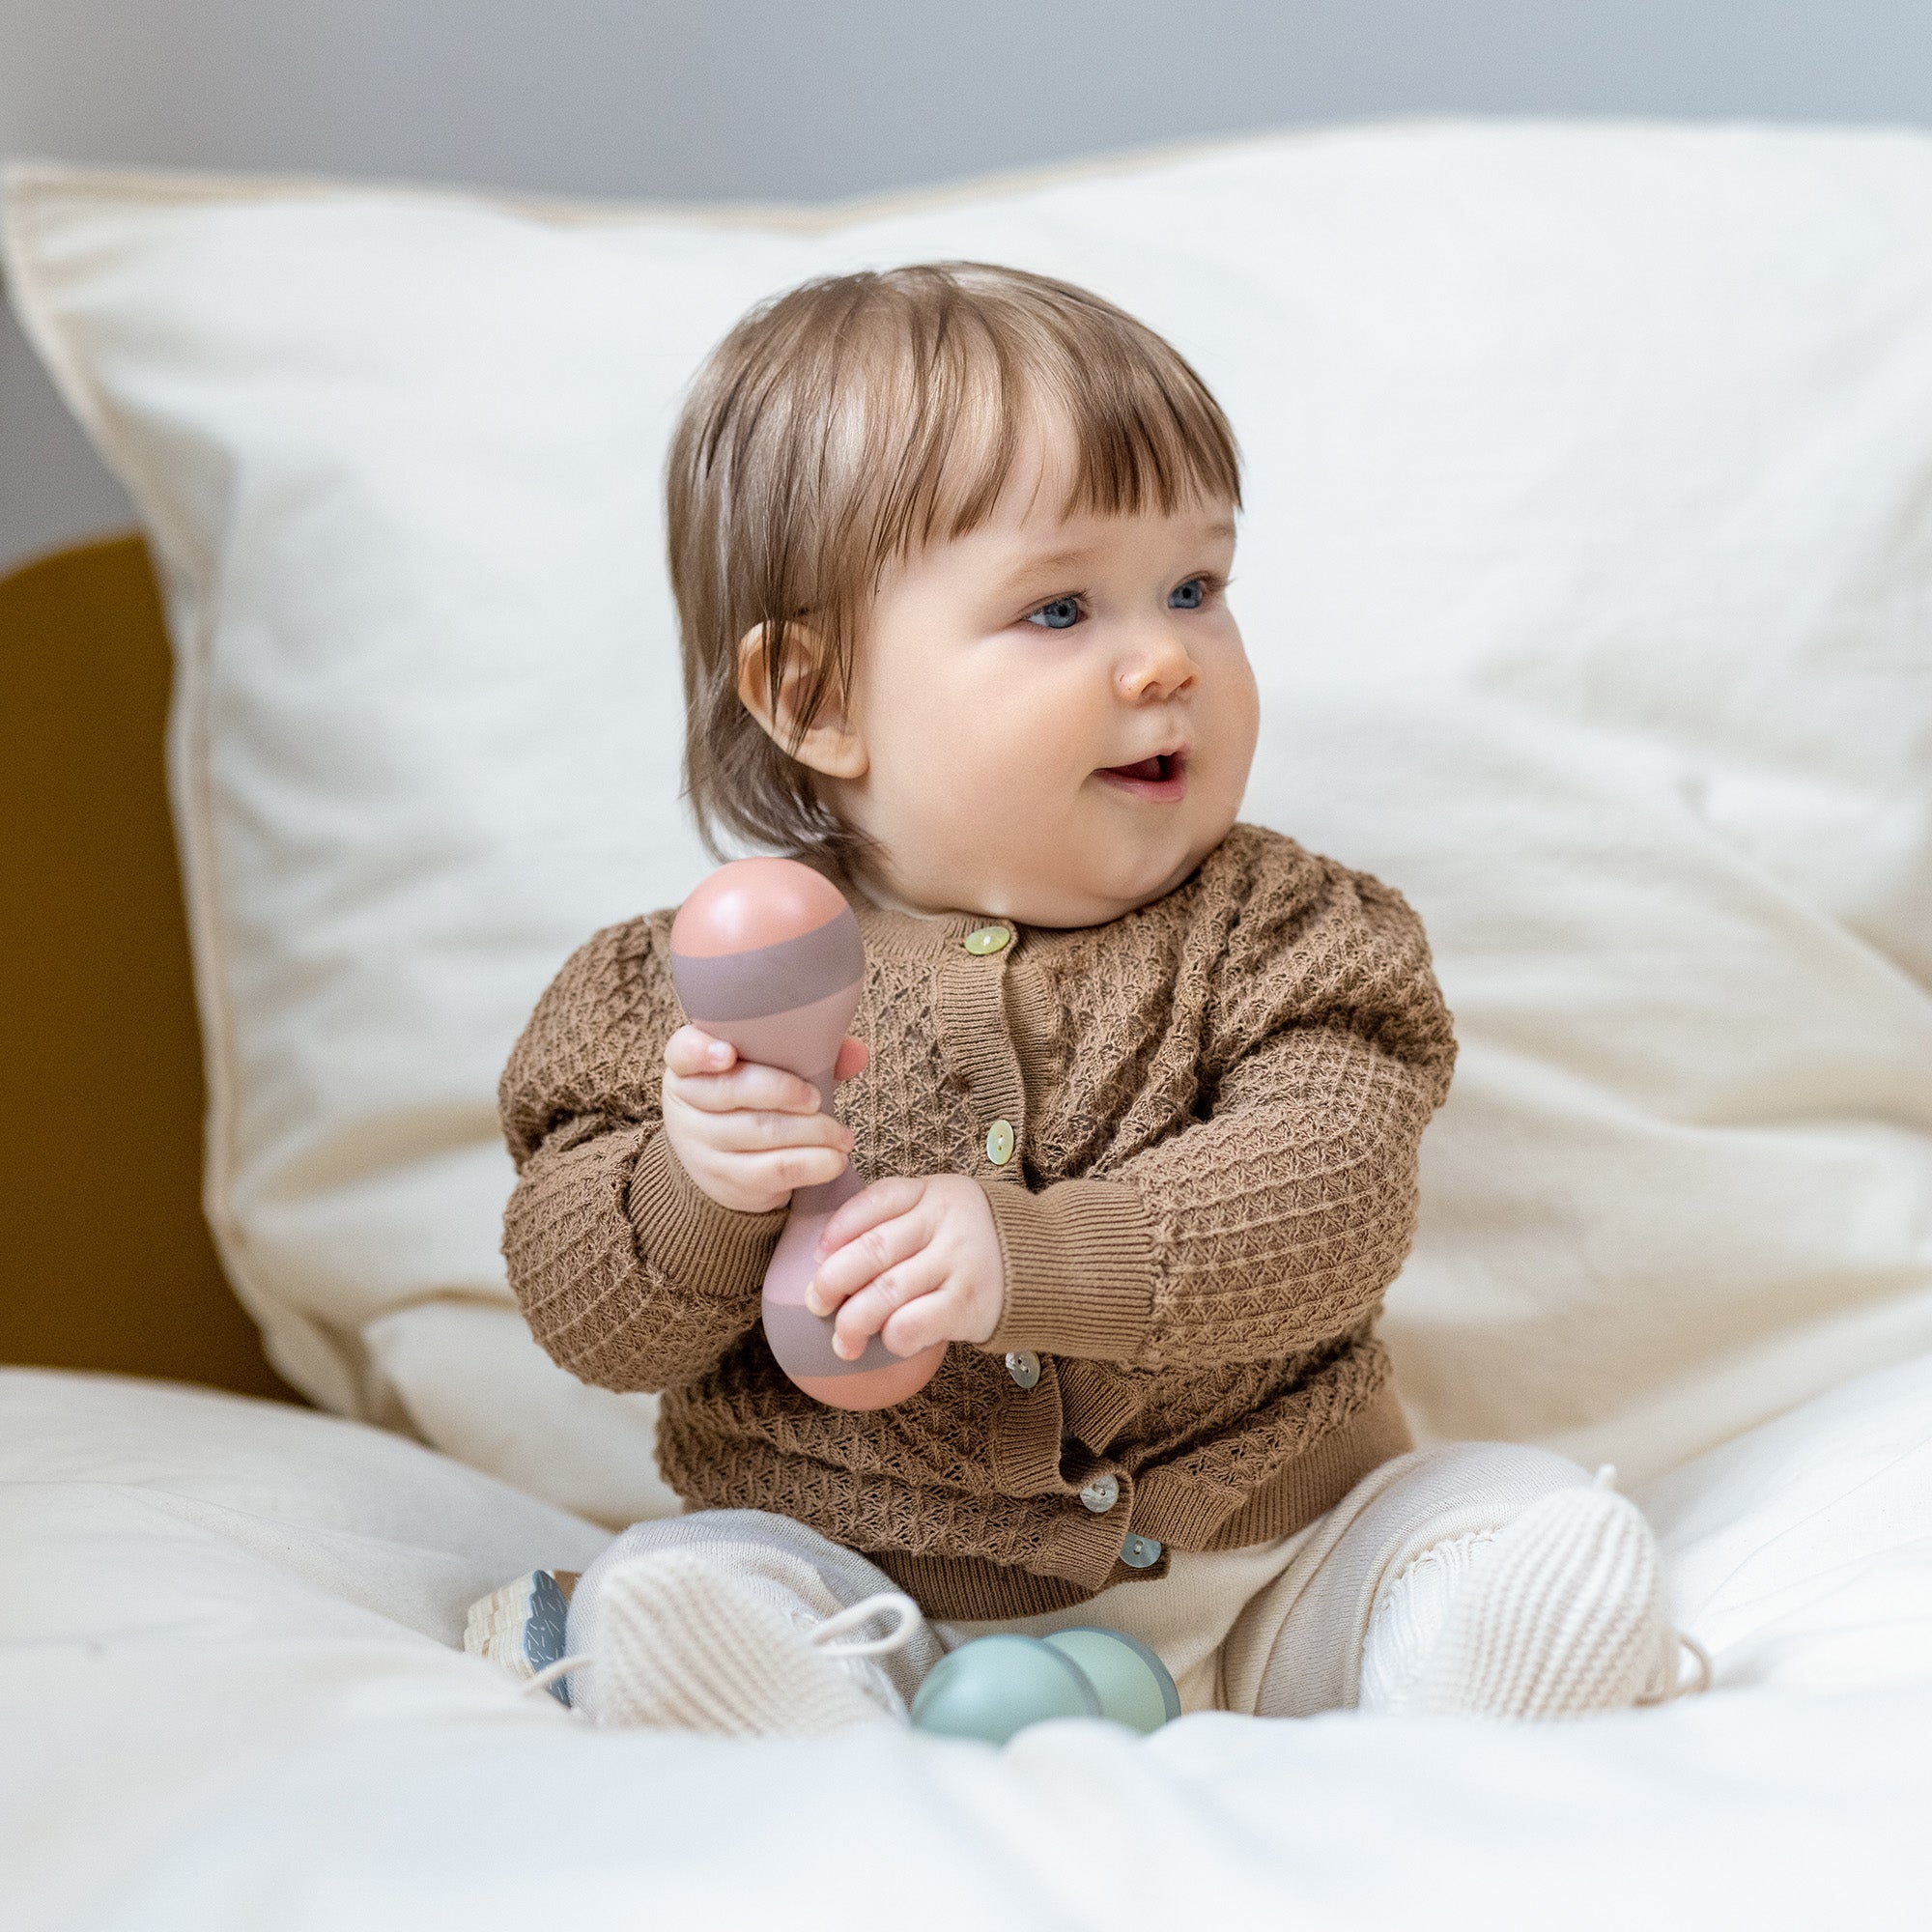 Cuándo Poner la Almohada al Bebé? - Los mejores consejos y recomendaciones  para tu bebe